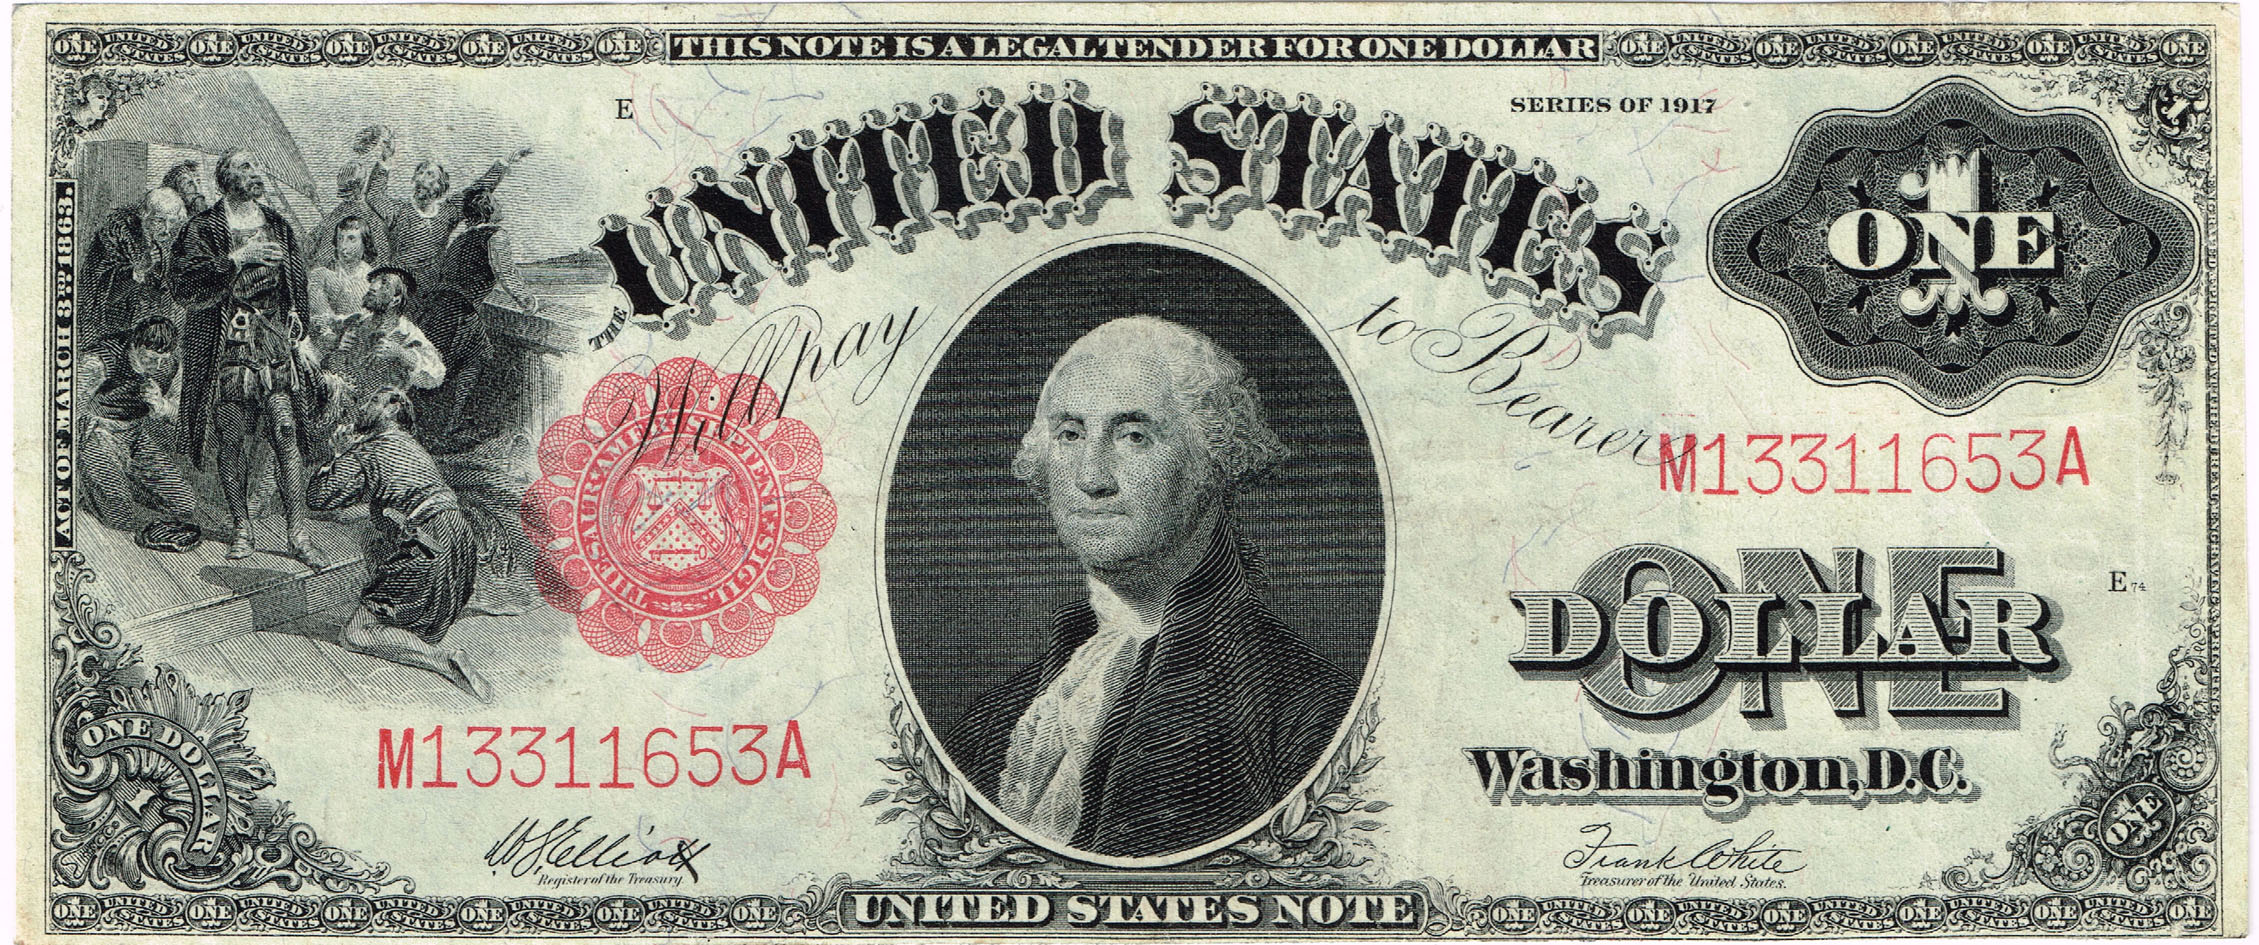  Stati Uniti 1 dollaro 1917 - Large size